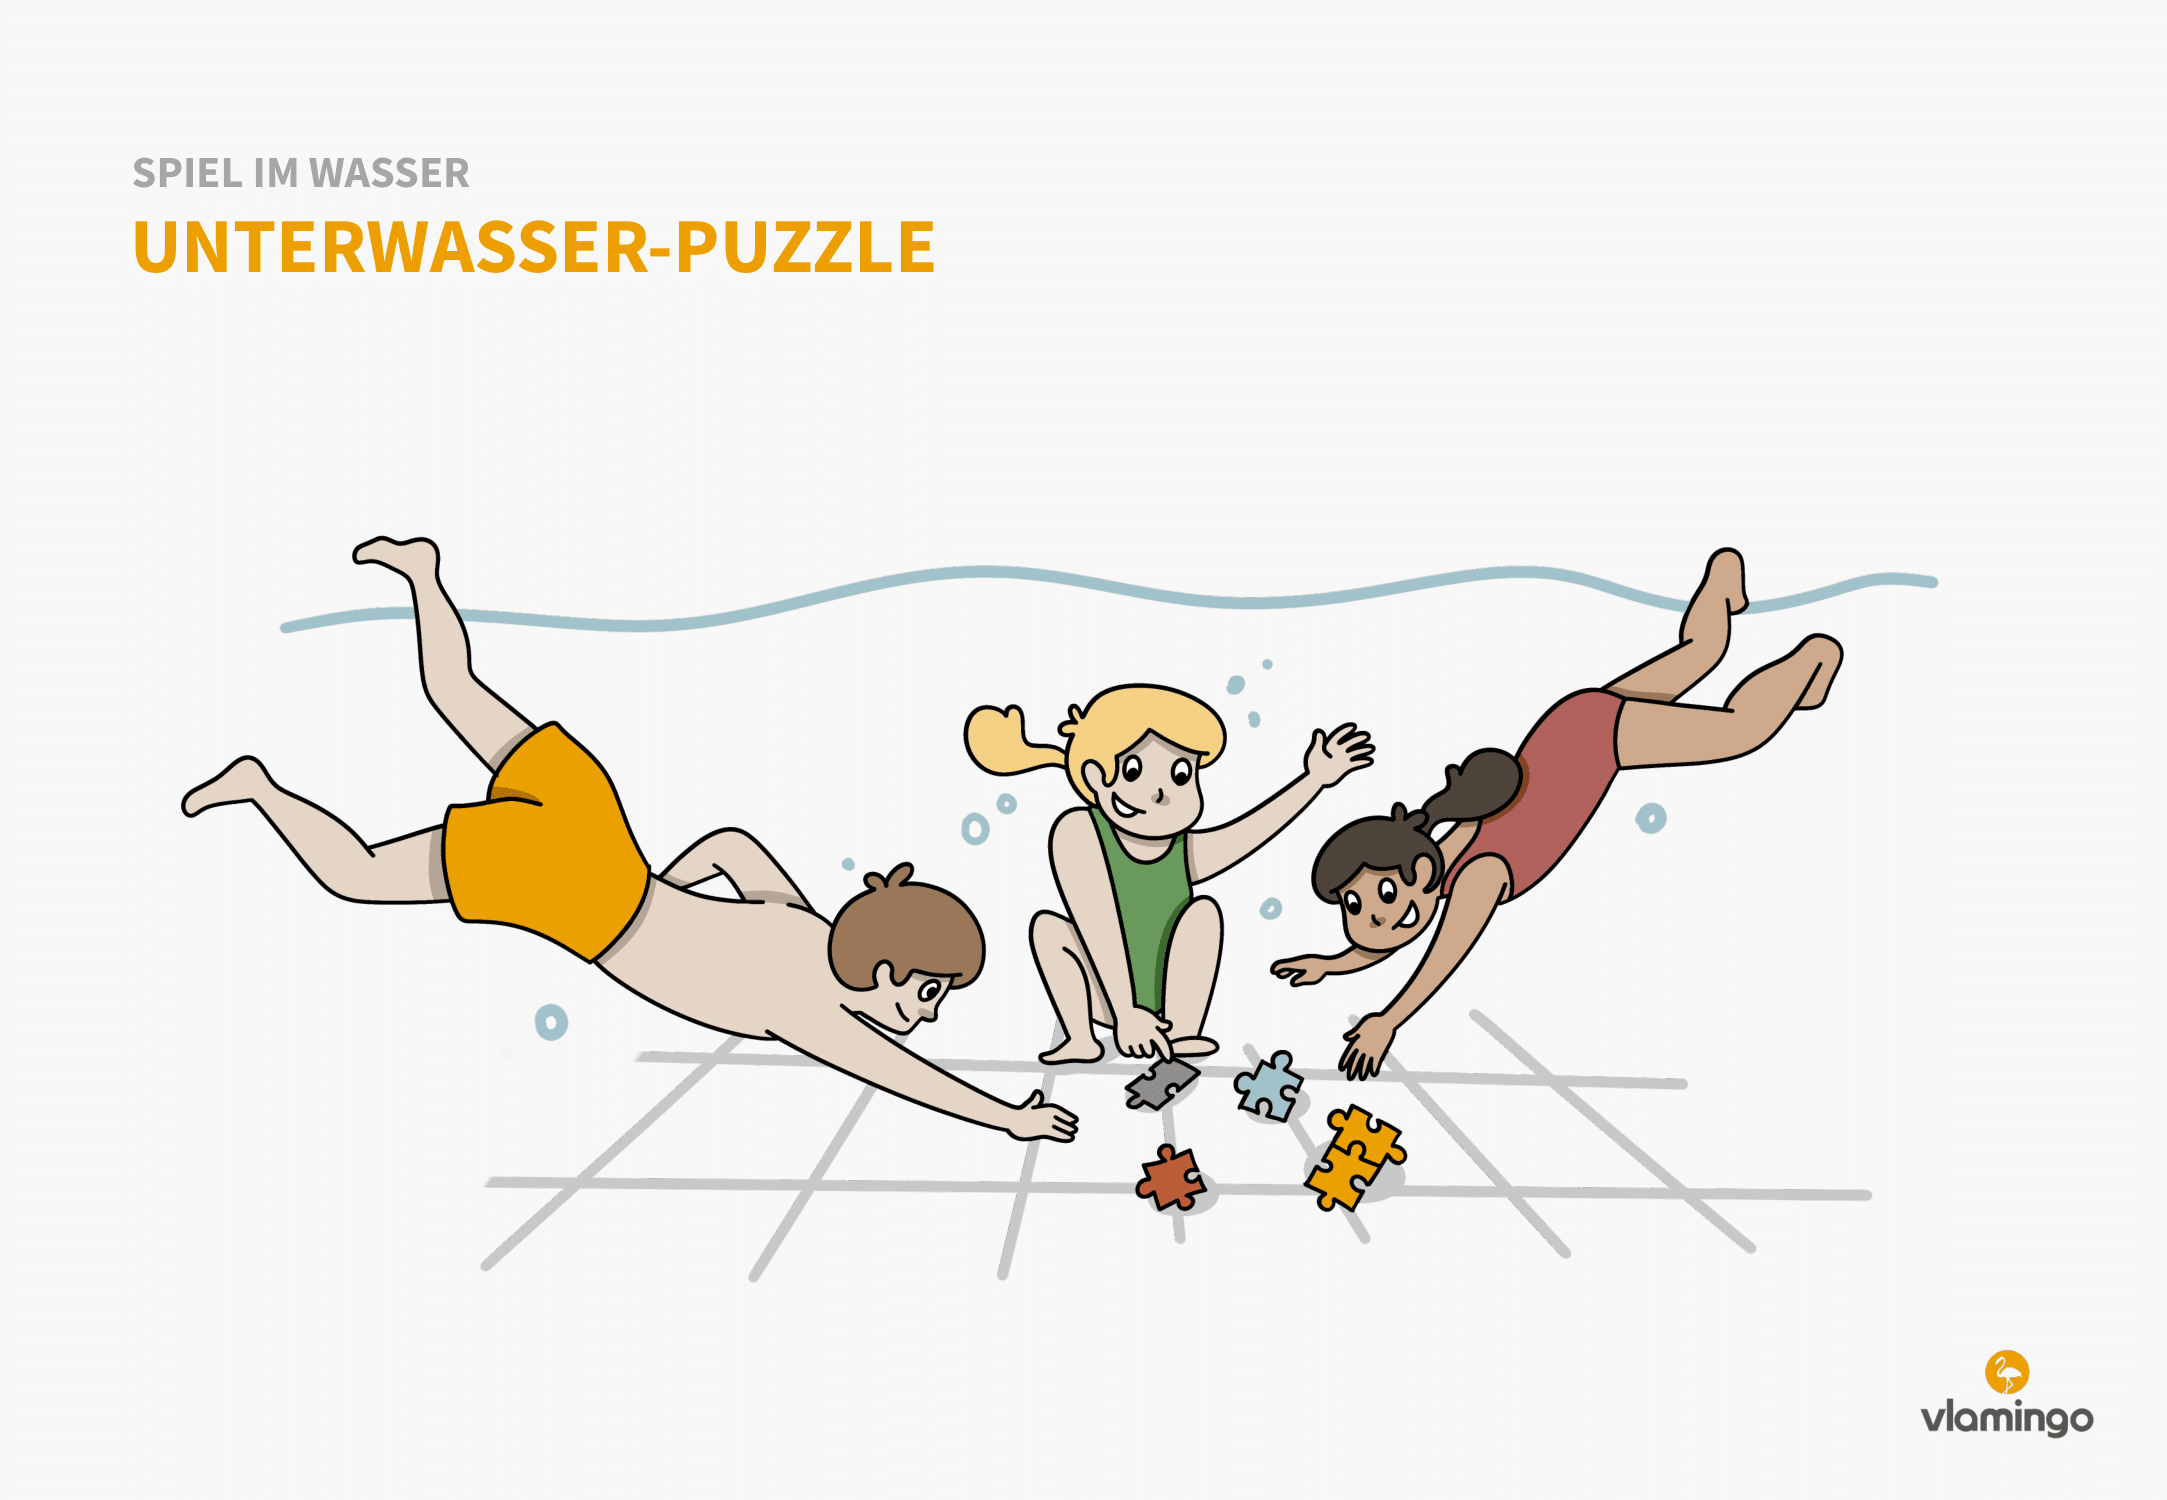 Unterwasser-Puzzle - Spiel im Wasser - Schwimmspiel